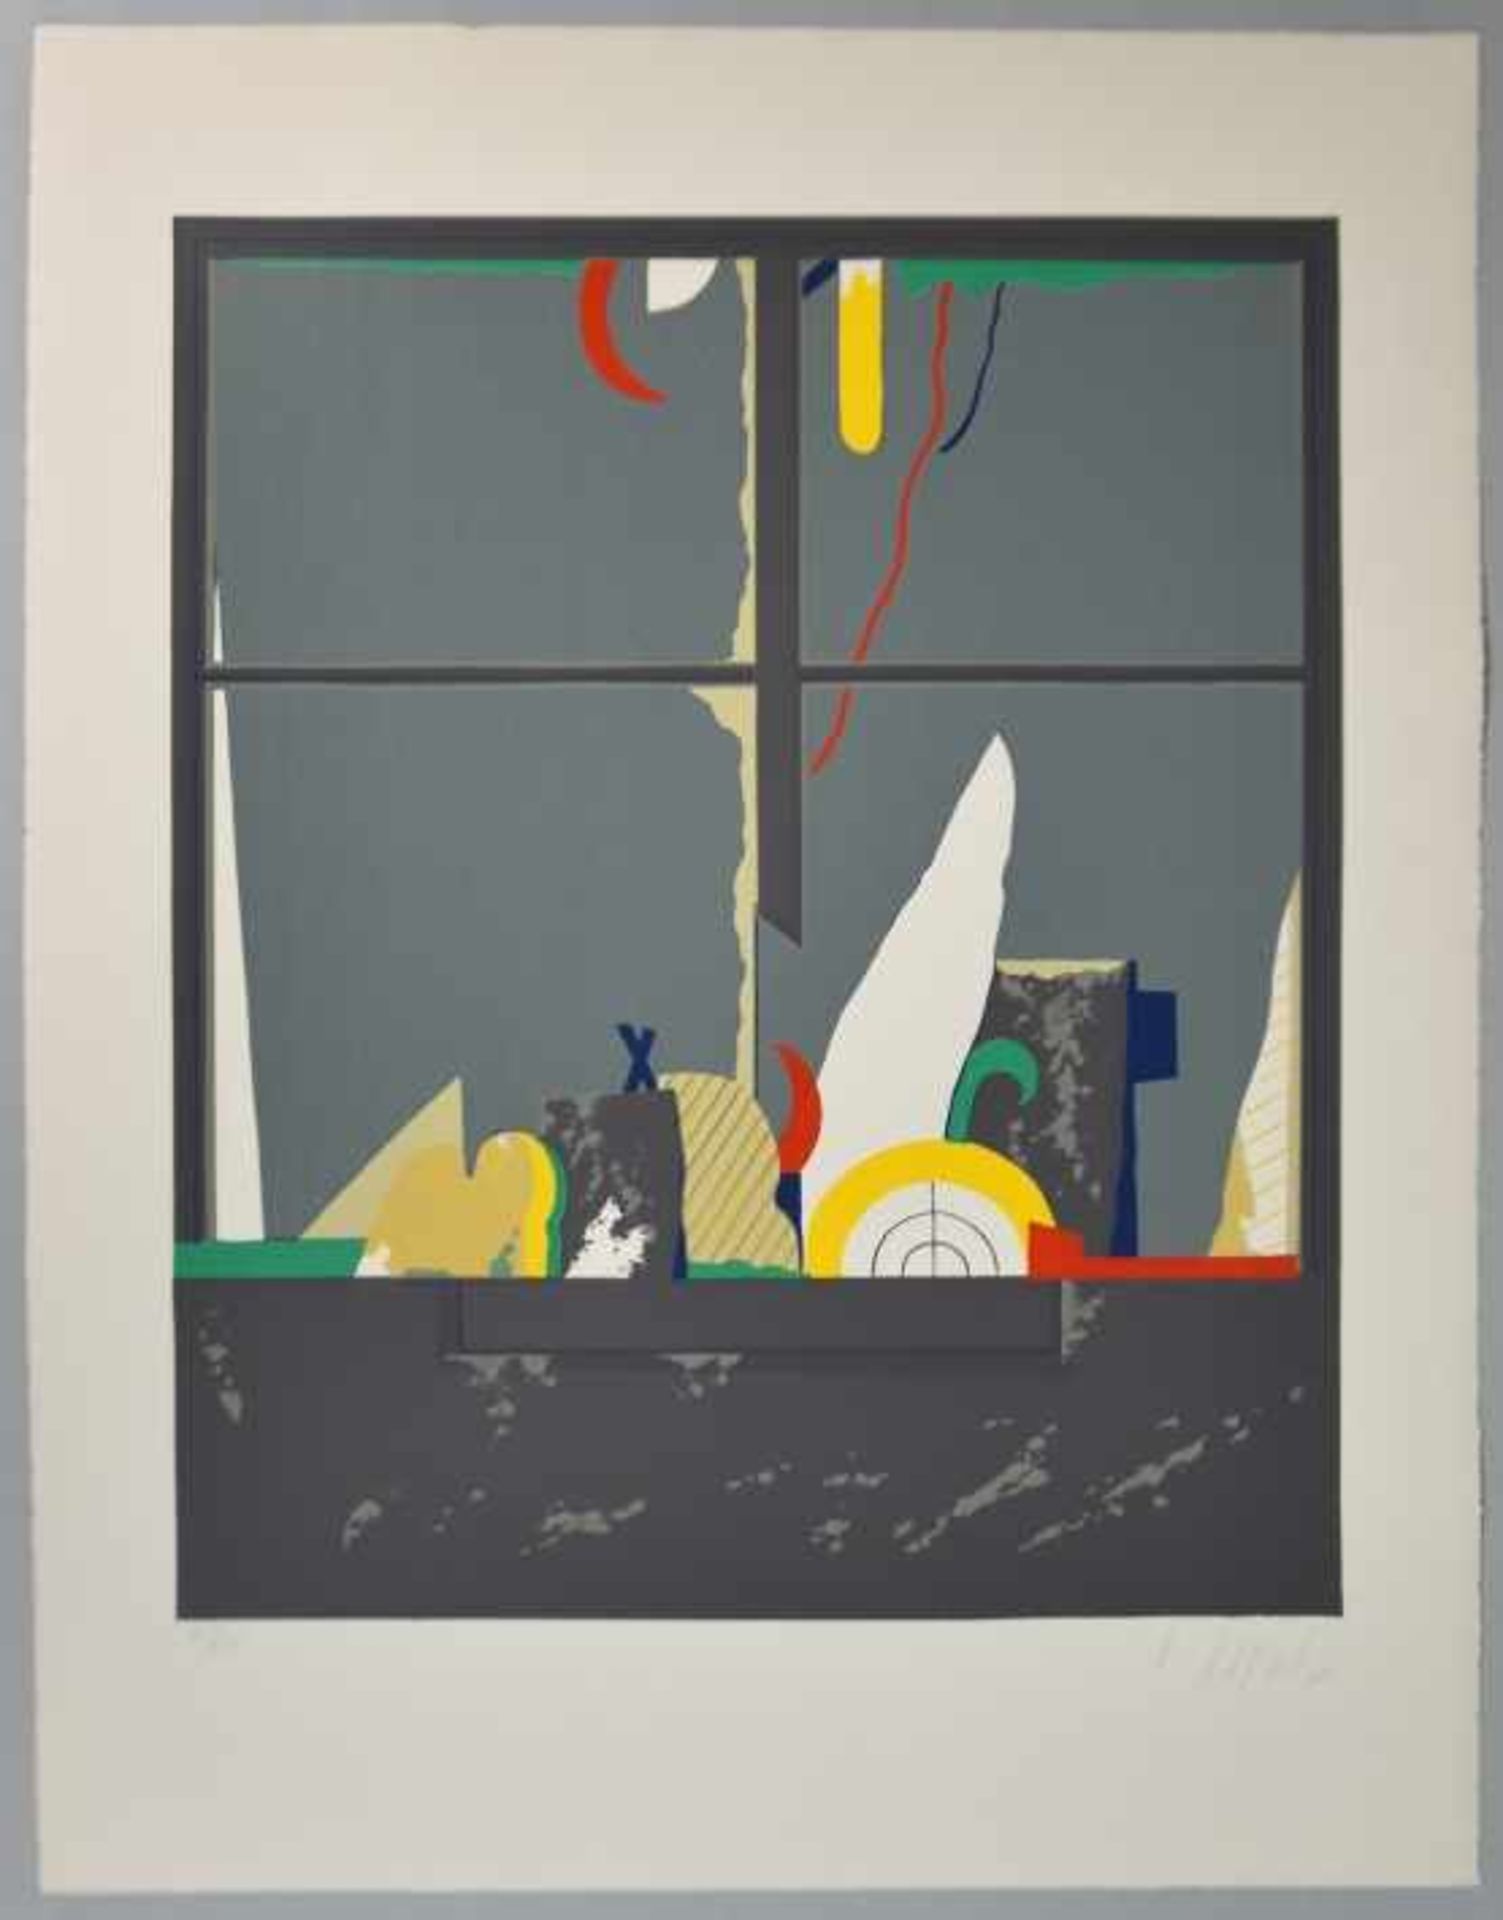 KORAB Karl (1937- Österreich) "Abstrakt" Farbserigraphie, rechts unten signiert, (19)75 datiert, - Image 2 of 3